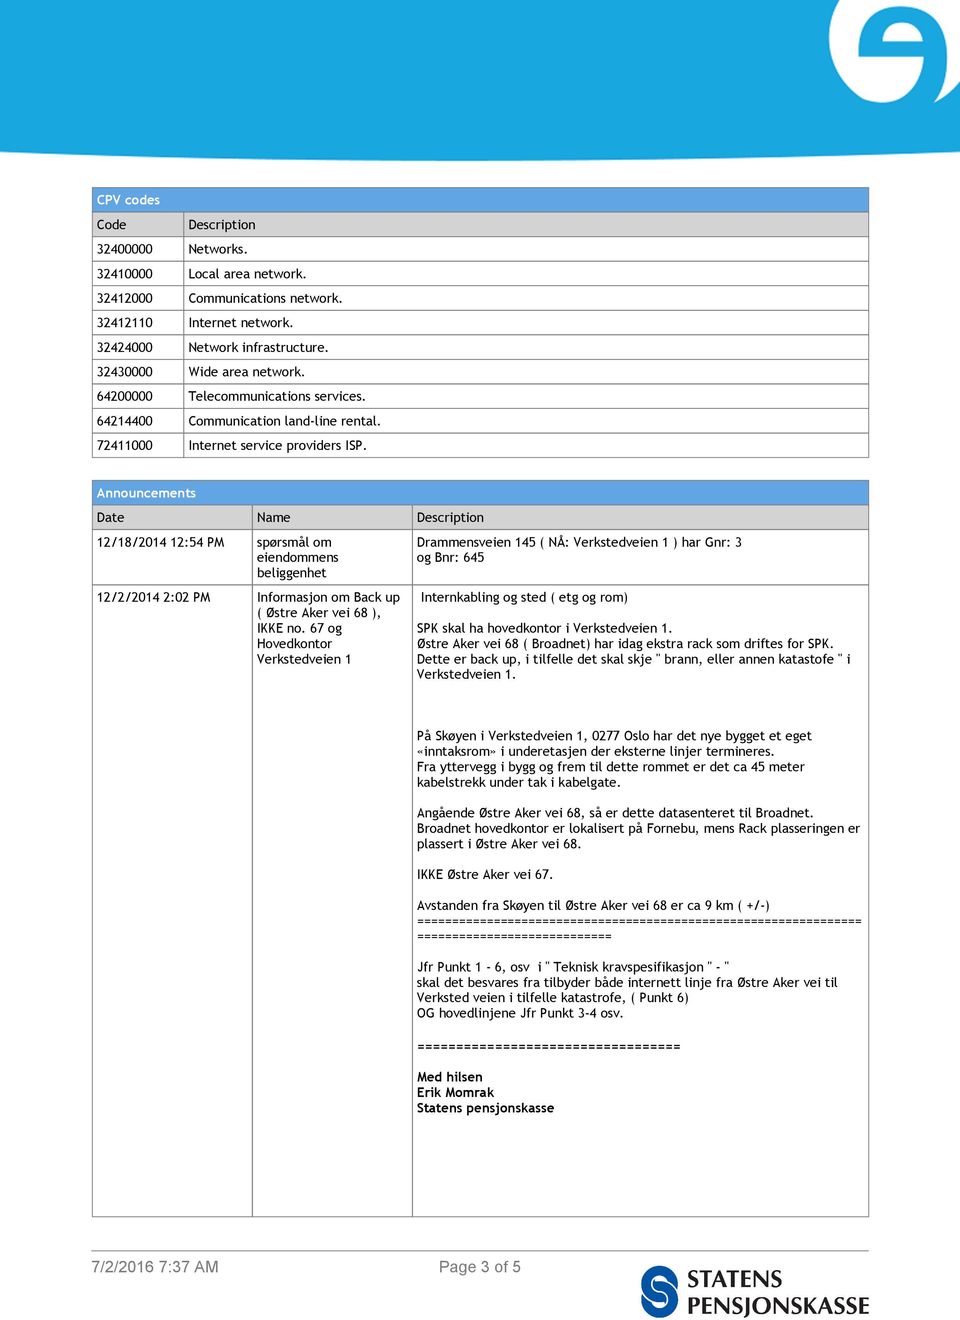 Announcements Date Name Description 12/18/2014 12:54 PM spørsmål om eiendommens beliggenhet 12/2/2014 2:02 PM Informasjon om Back up ( Østre Aker vei 68 ), IKKE no.